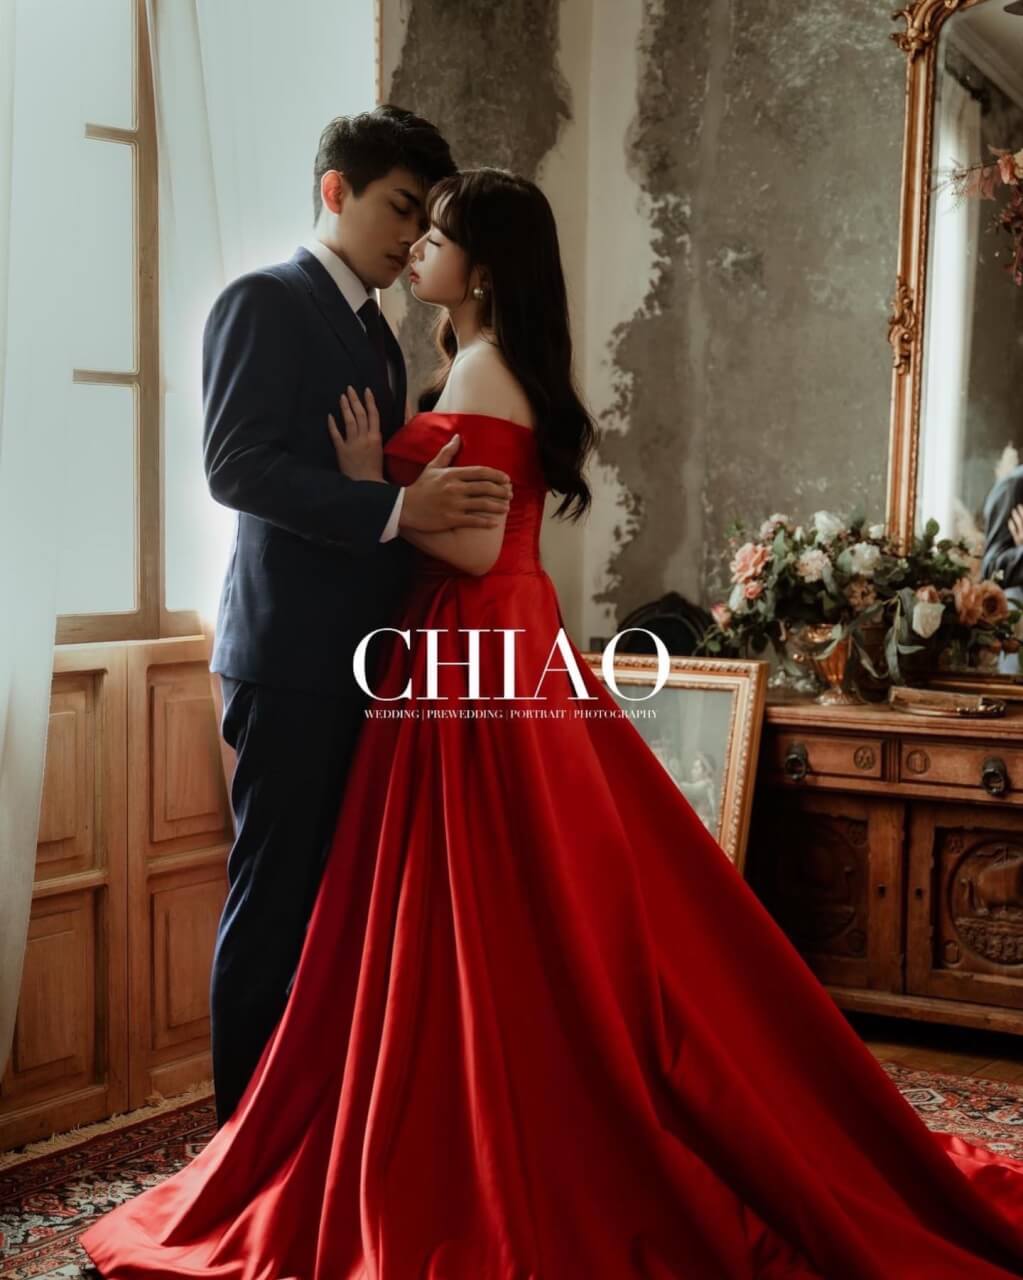 CHIAO Photo Studio / 乙卉婚紗照分享| 愛情蔓延精緻婚紗 - 禮服出租 | 台中婚紗